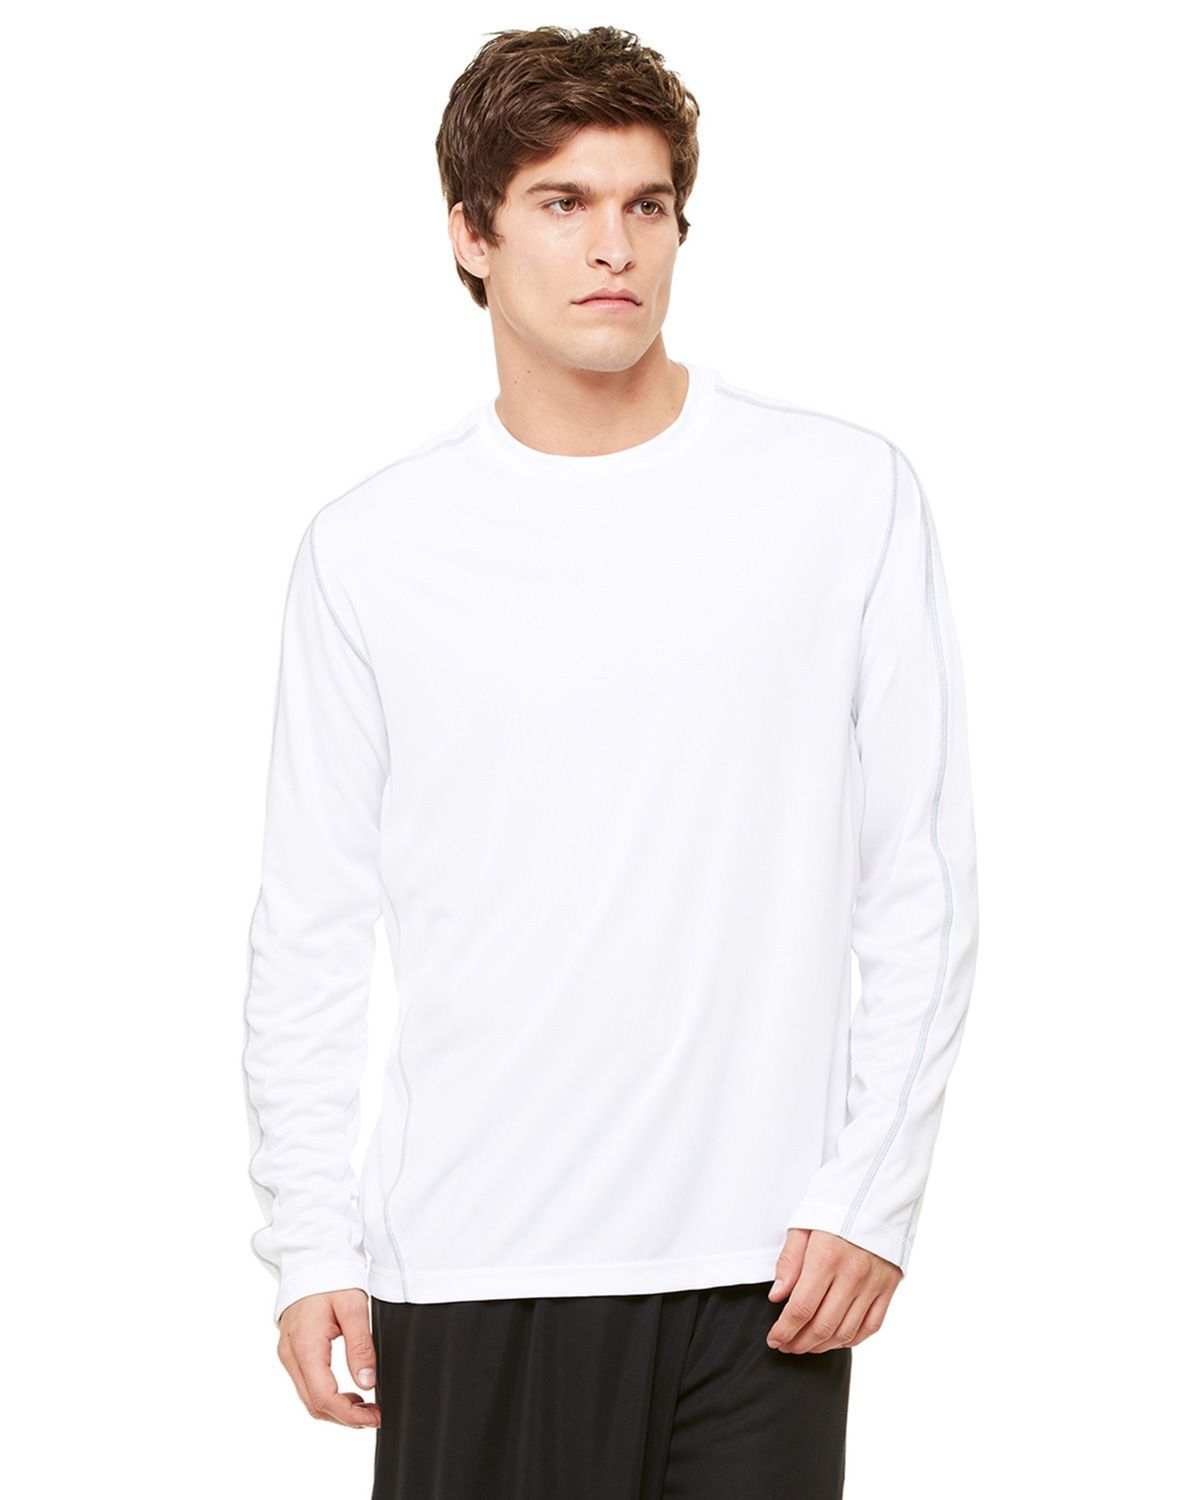 Buy All Sport M3021 Men’s 4.1 oz. Long-Sleeve Edge T-Shirt